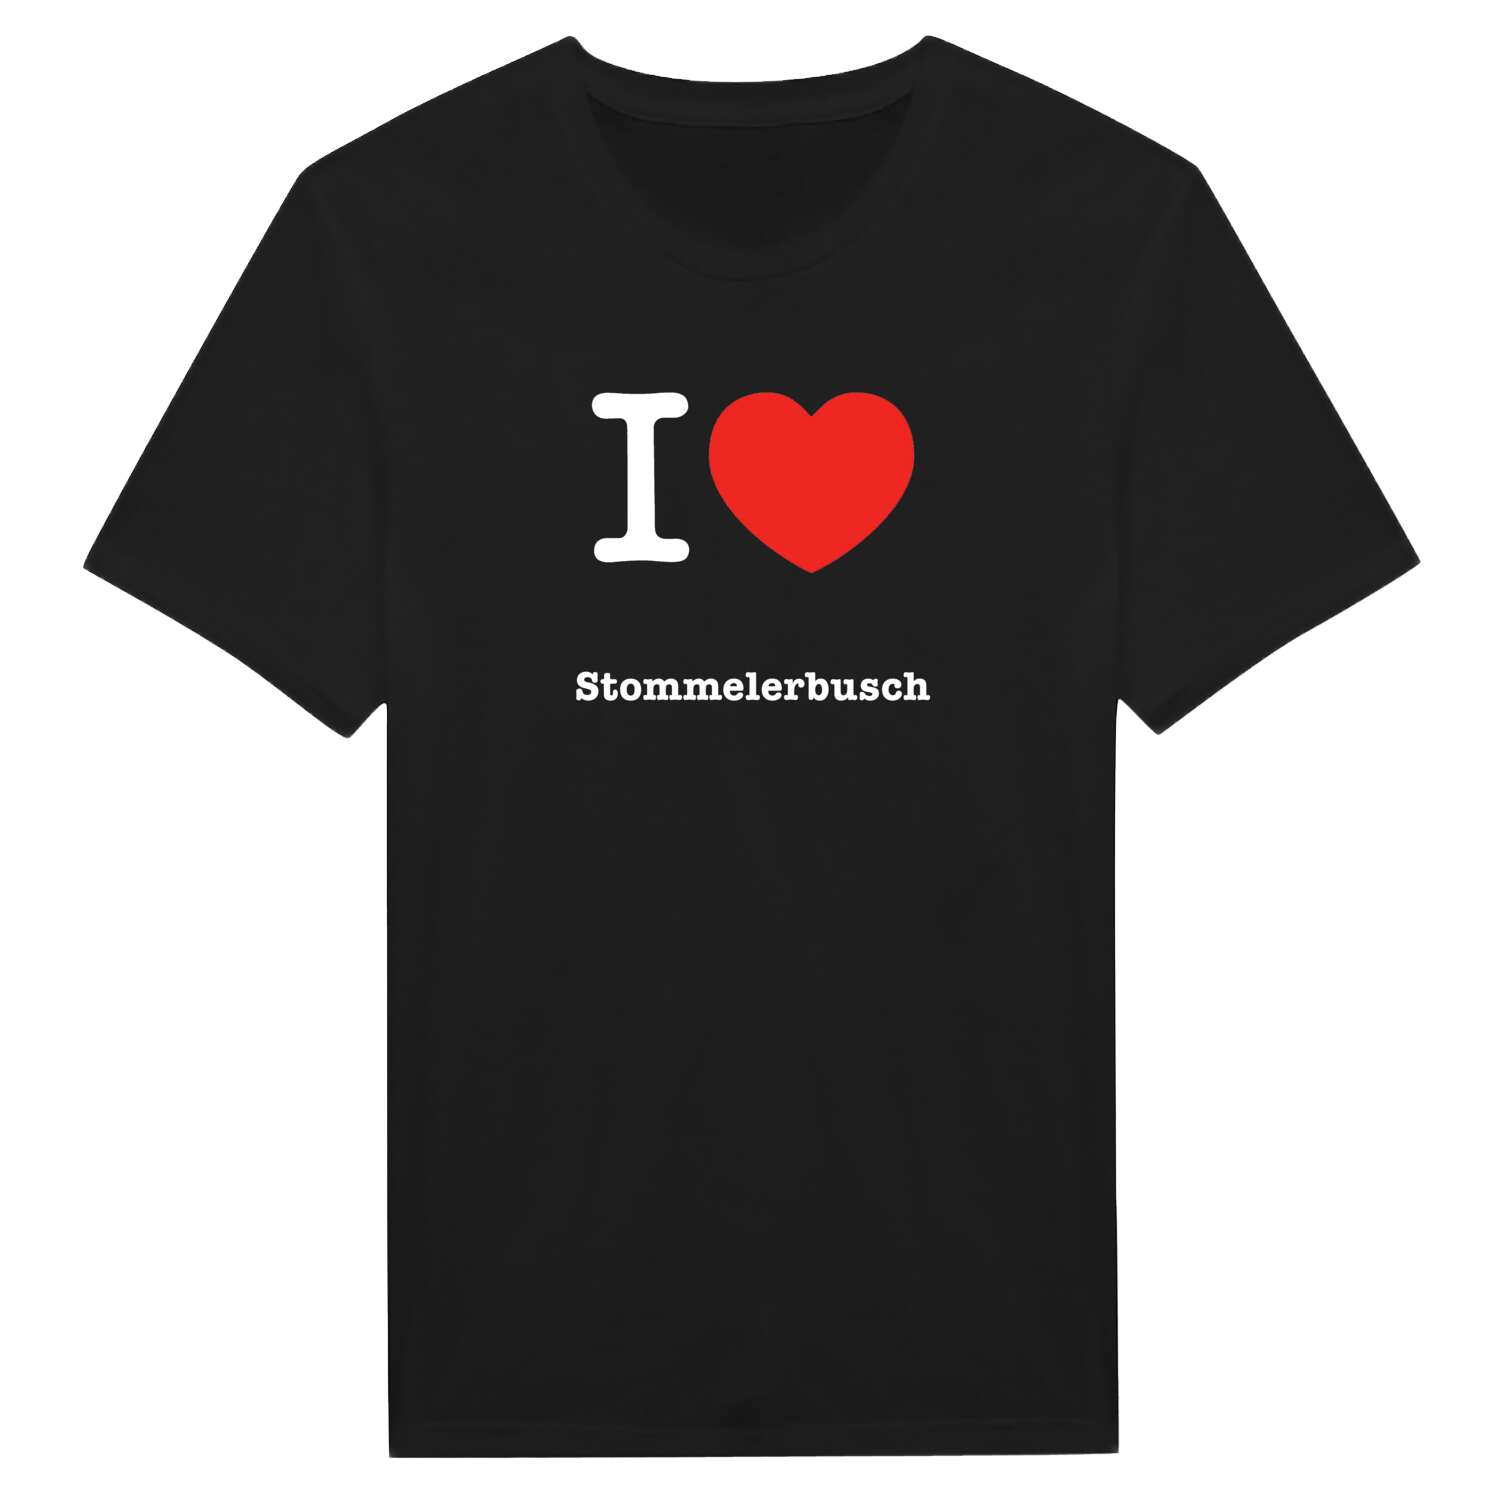 Stommelerbusch T-Shirt »I love«